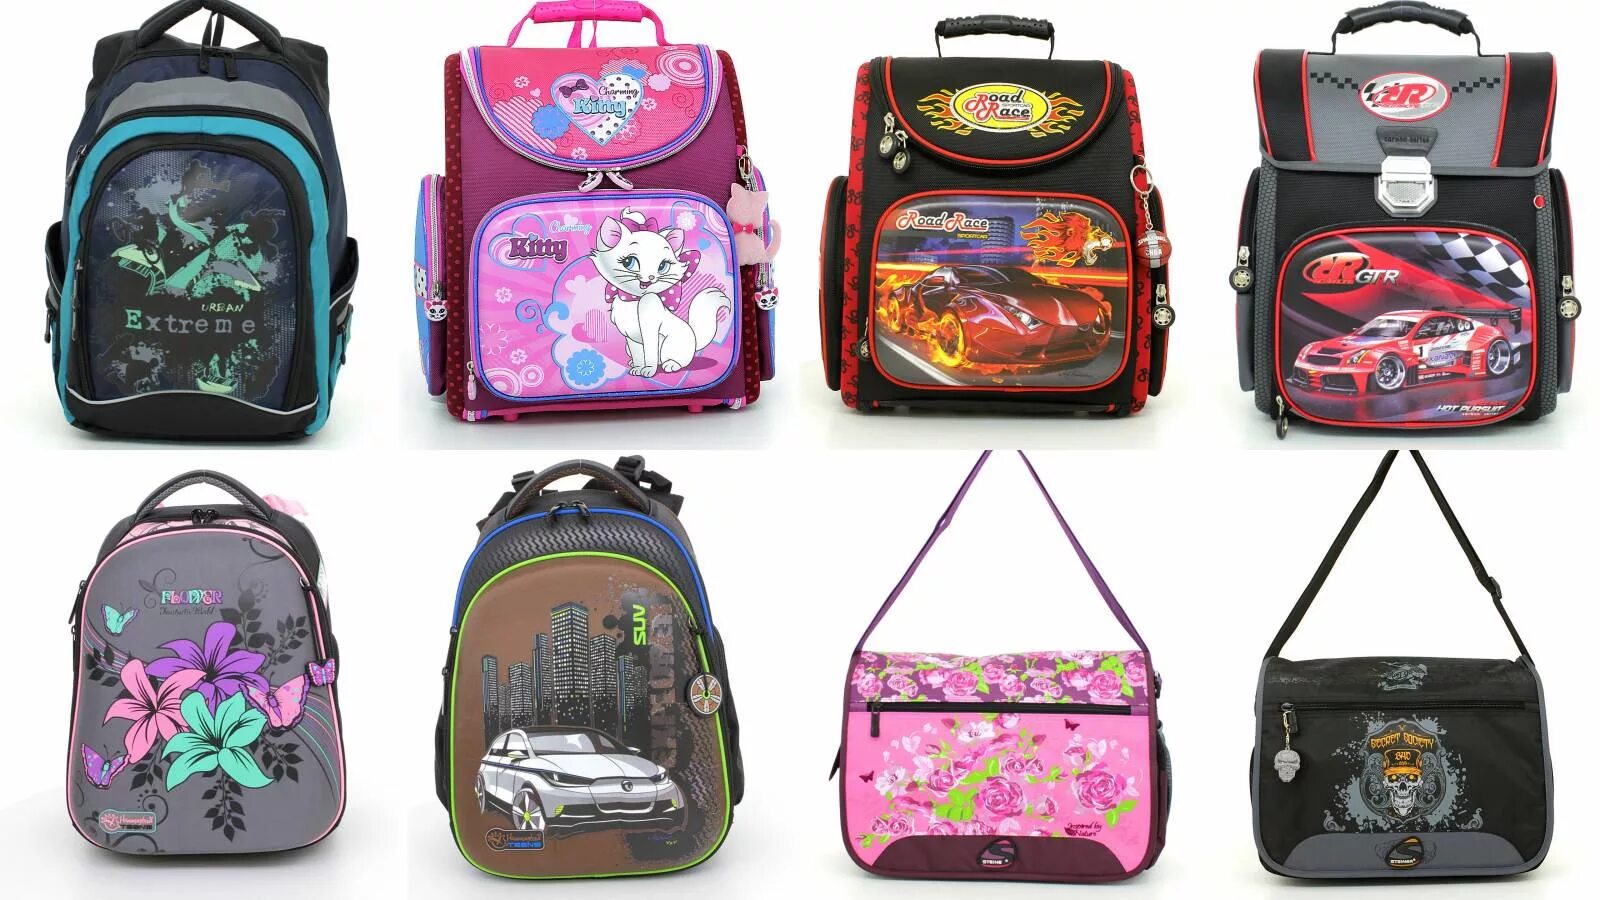 Название портфелей. Портфель для школы. Рюкзак школьный для девочек. Рюкзаки для школы много. Разные школьные сумки.